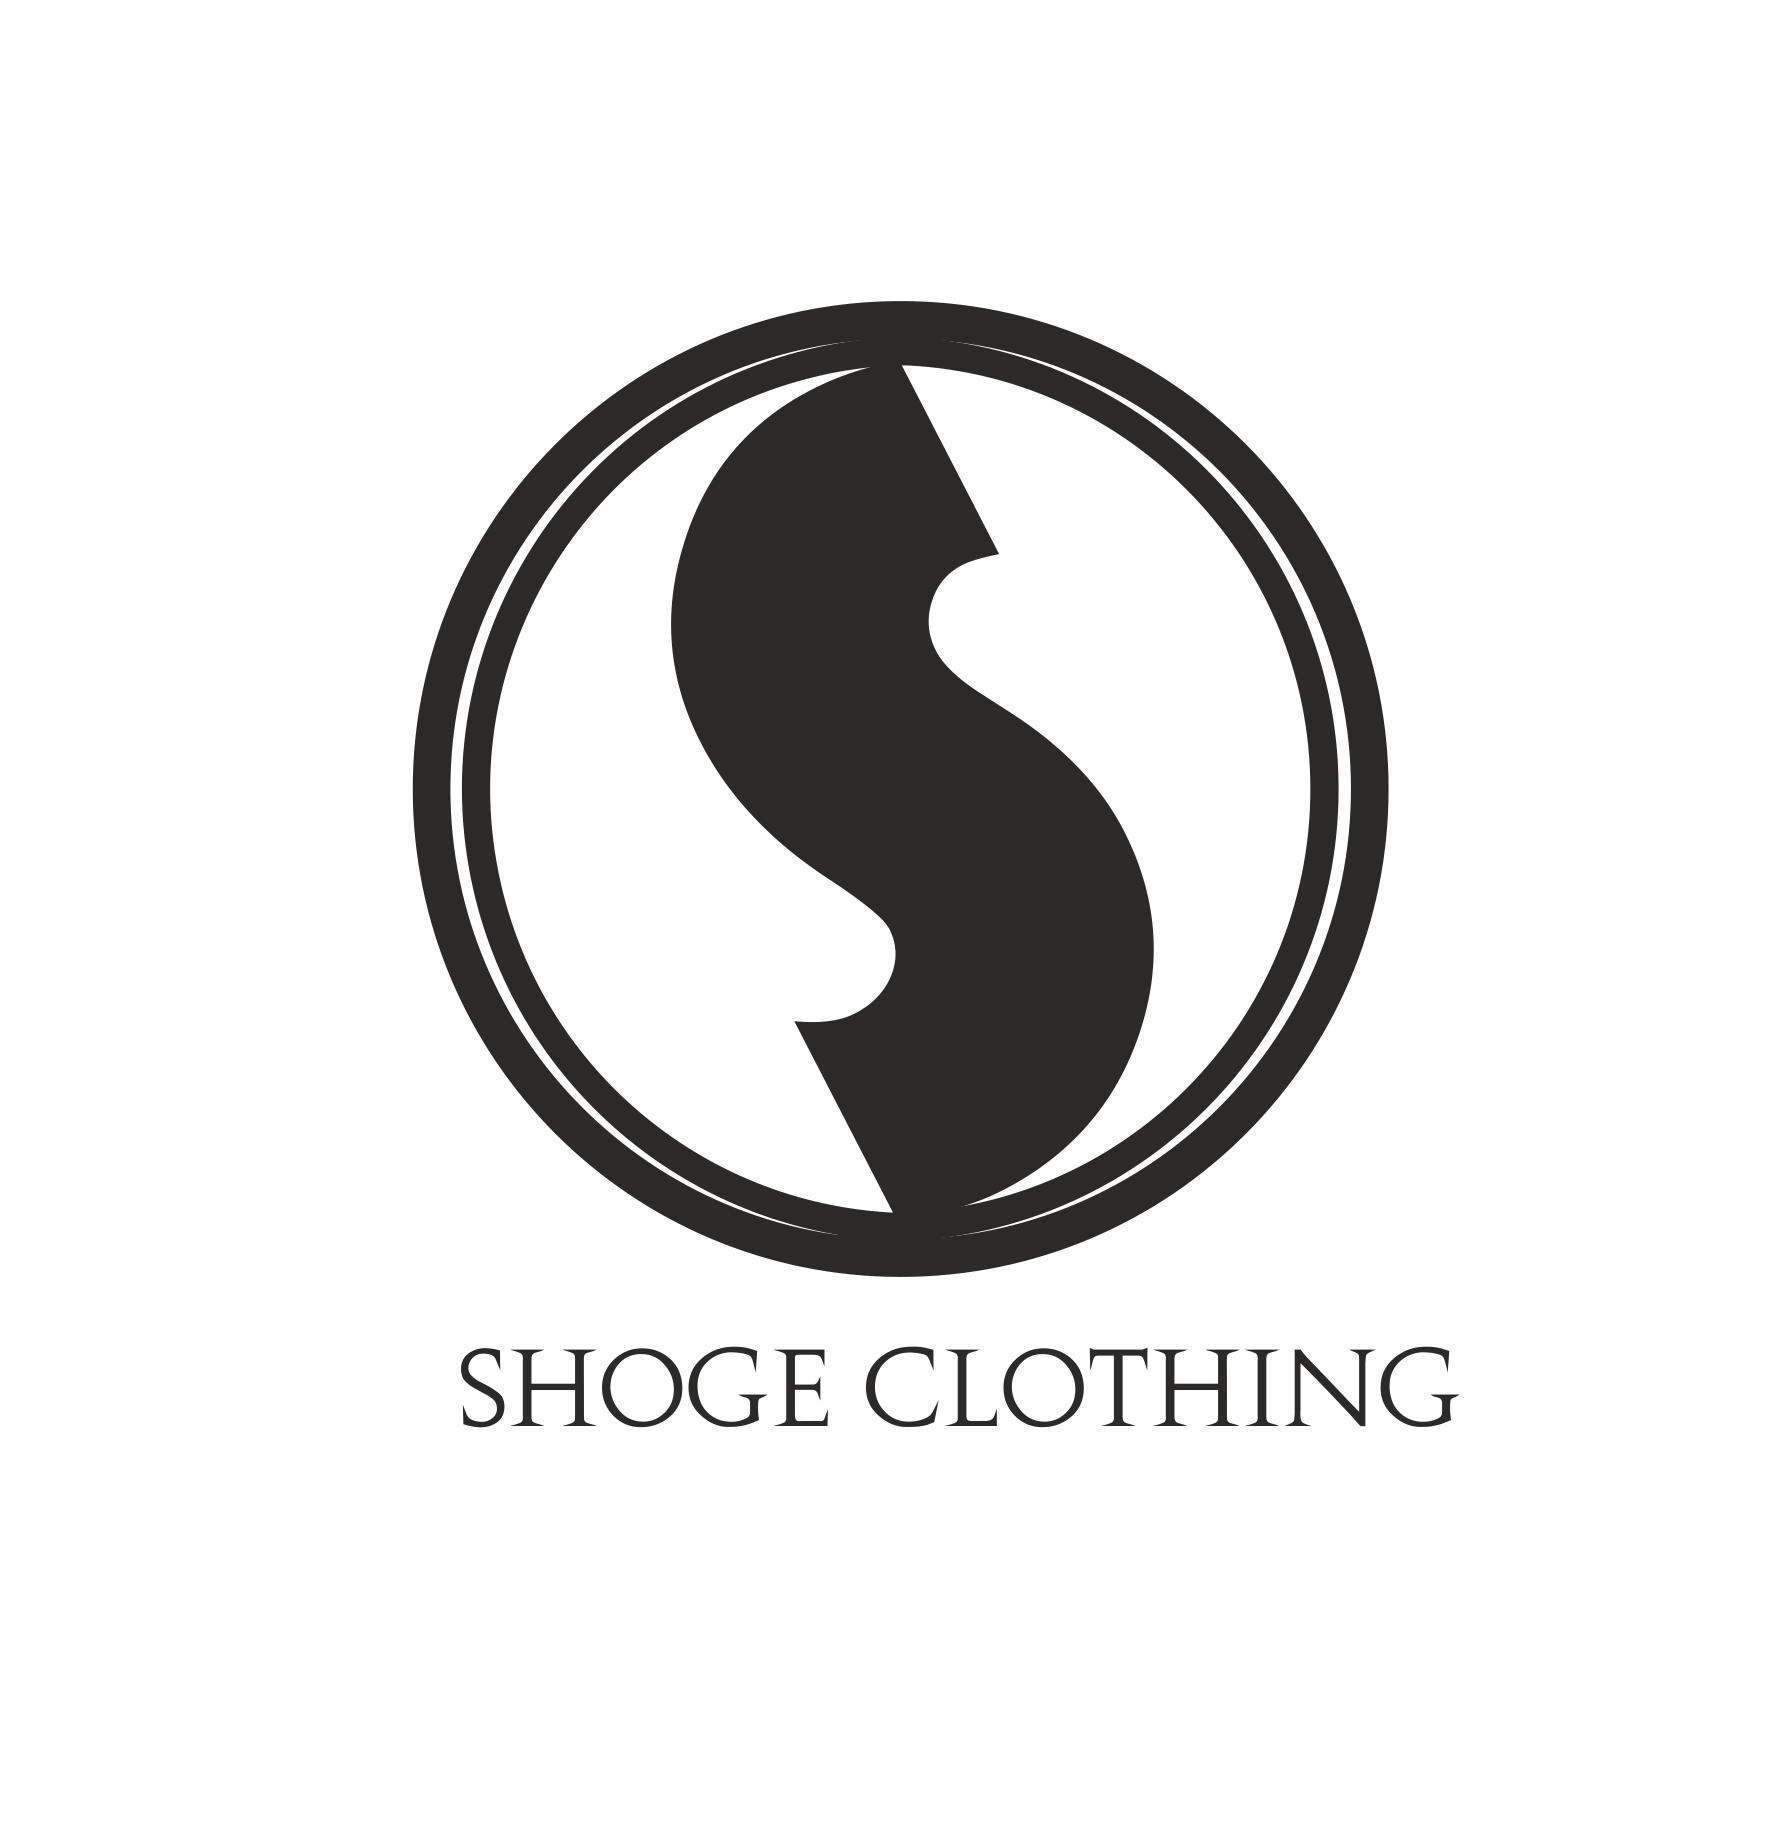 Shoge Clothing